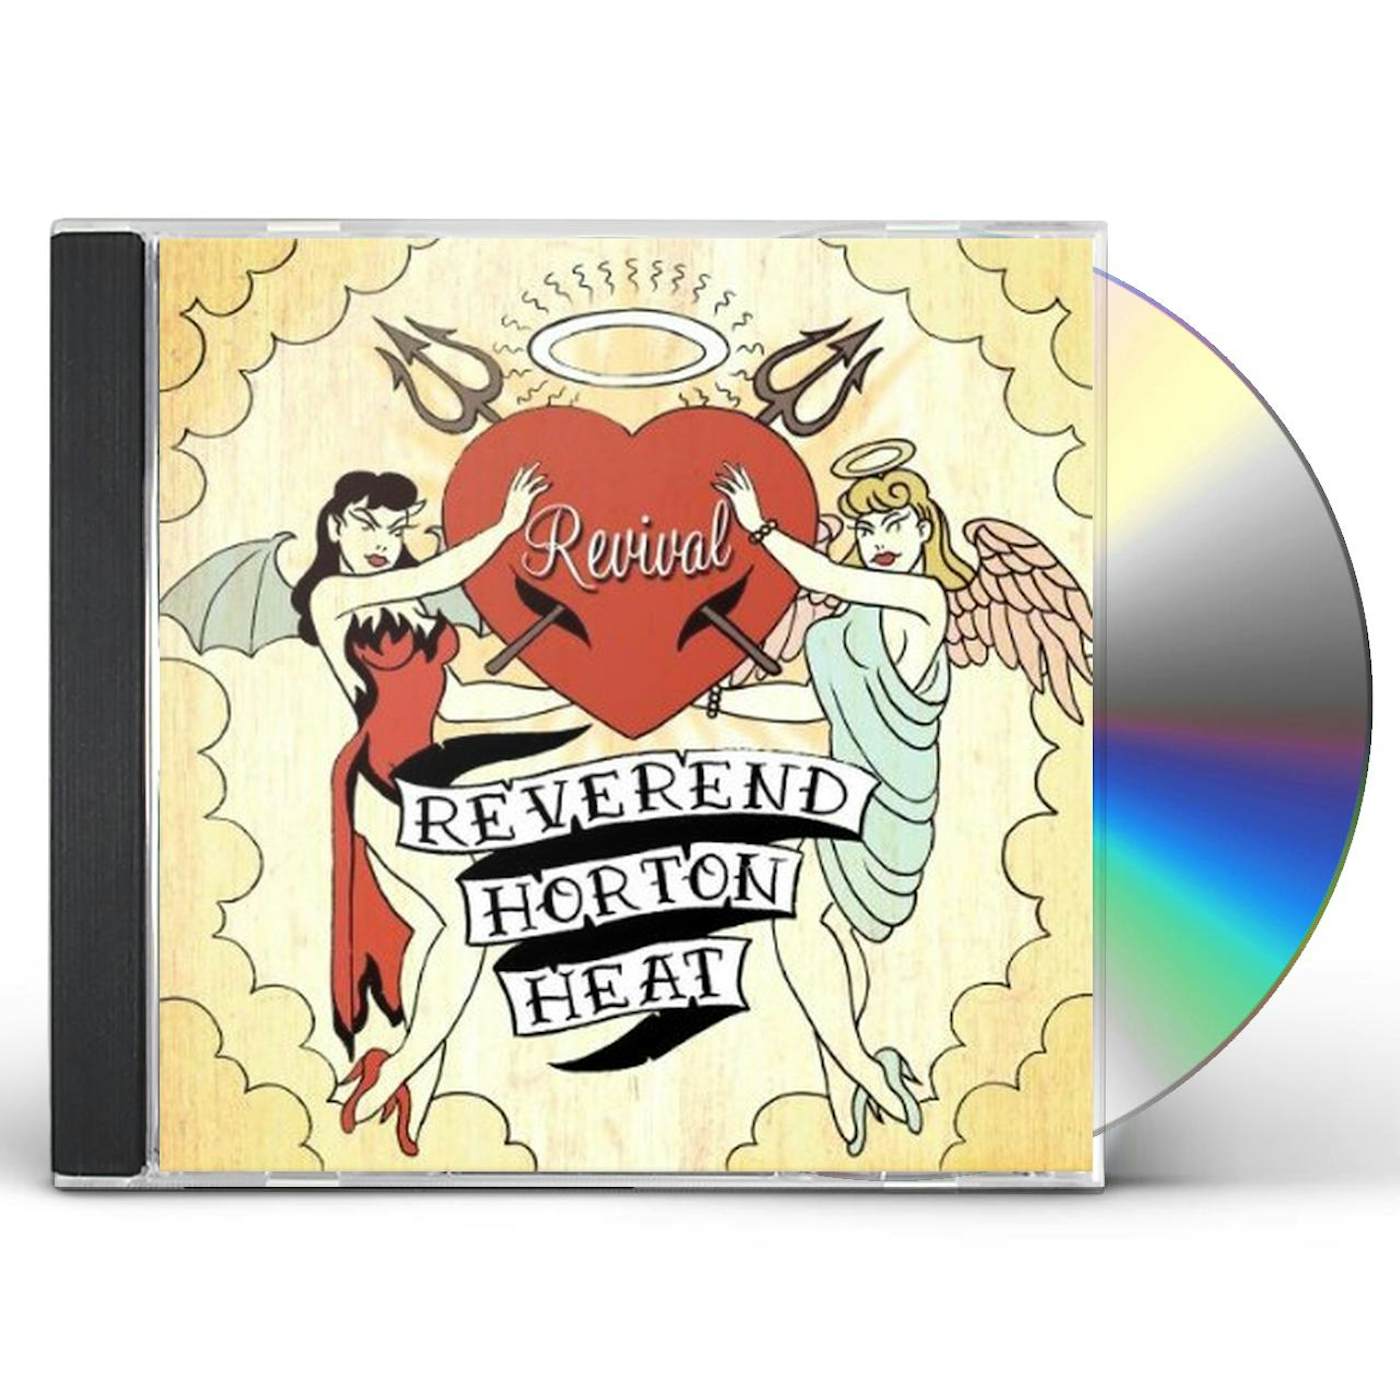 The Reverend Horton Heat REVIVAL CD